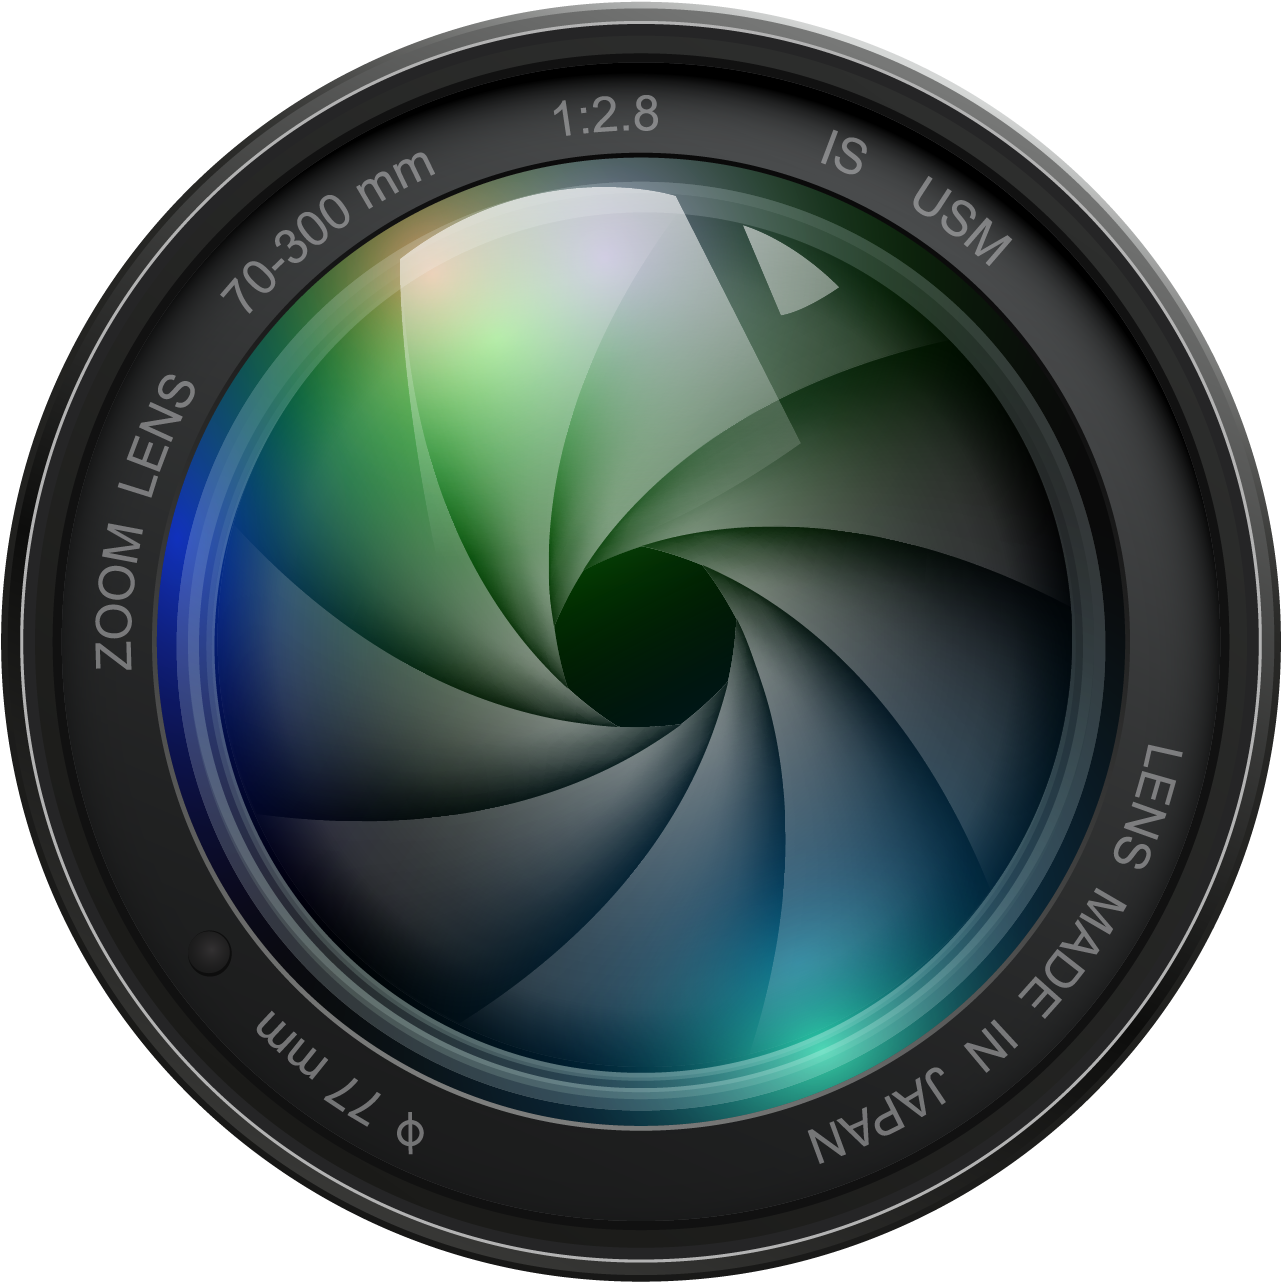 Camera Lens Aperture Design